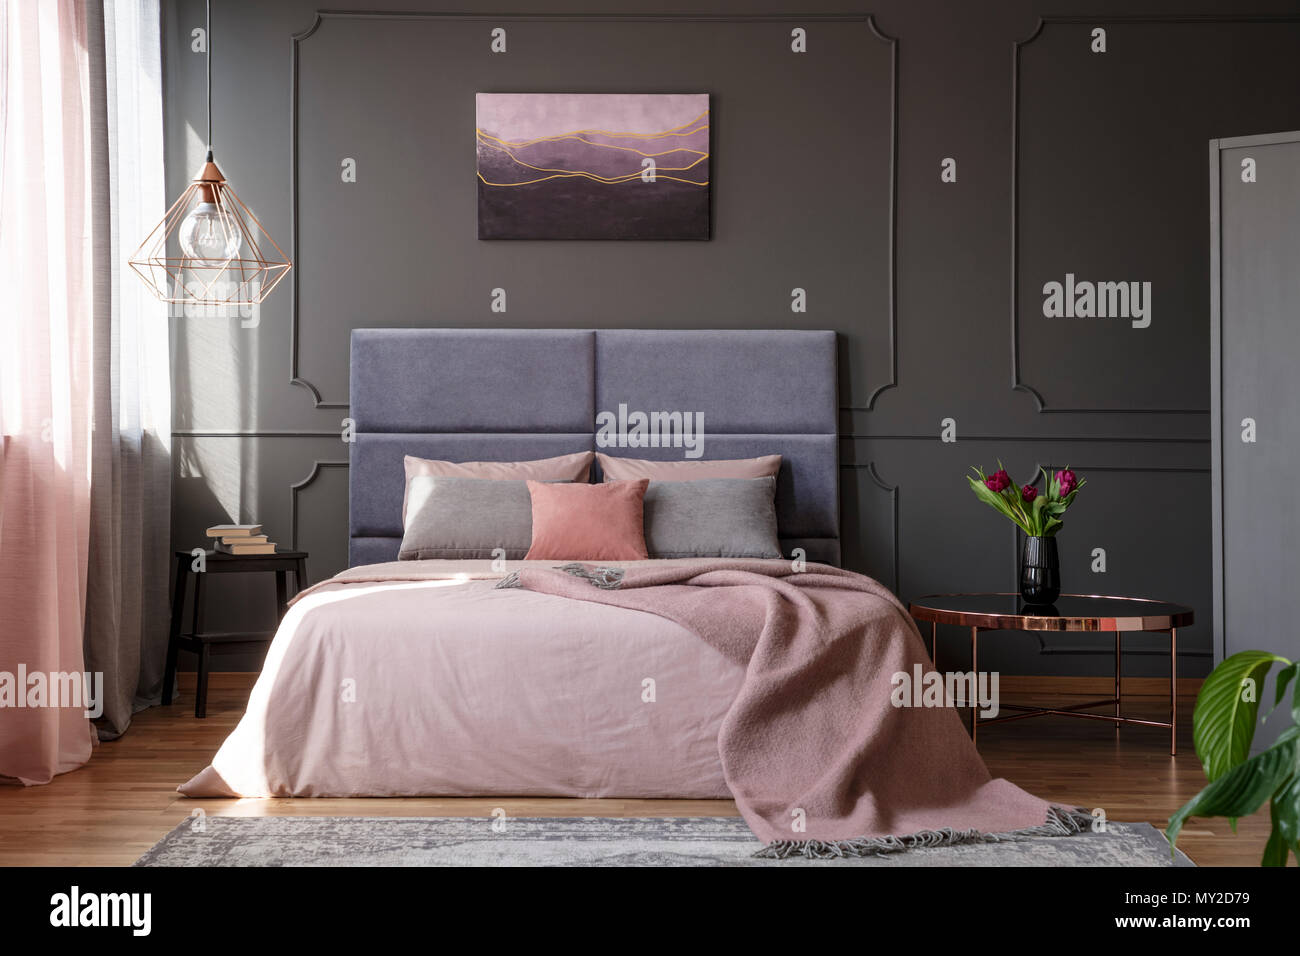 Tulpen auf Kupfer Tisch neben Rosa Bett gegen graue Wand mit Spritzgießen  mit Himmelbett im Schlafzimmer Innenraum Stockfotografie - Alamy